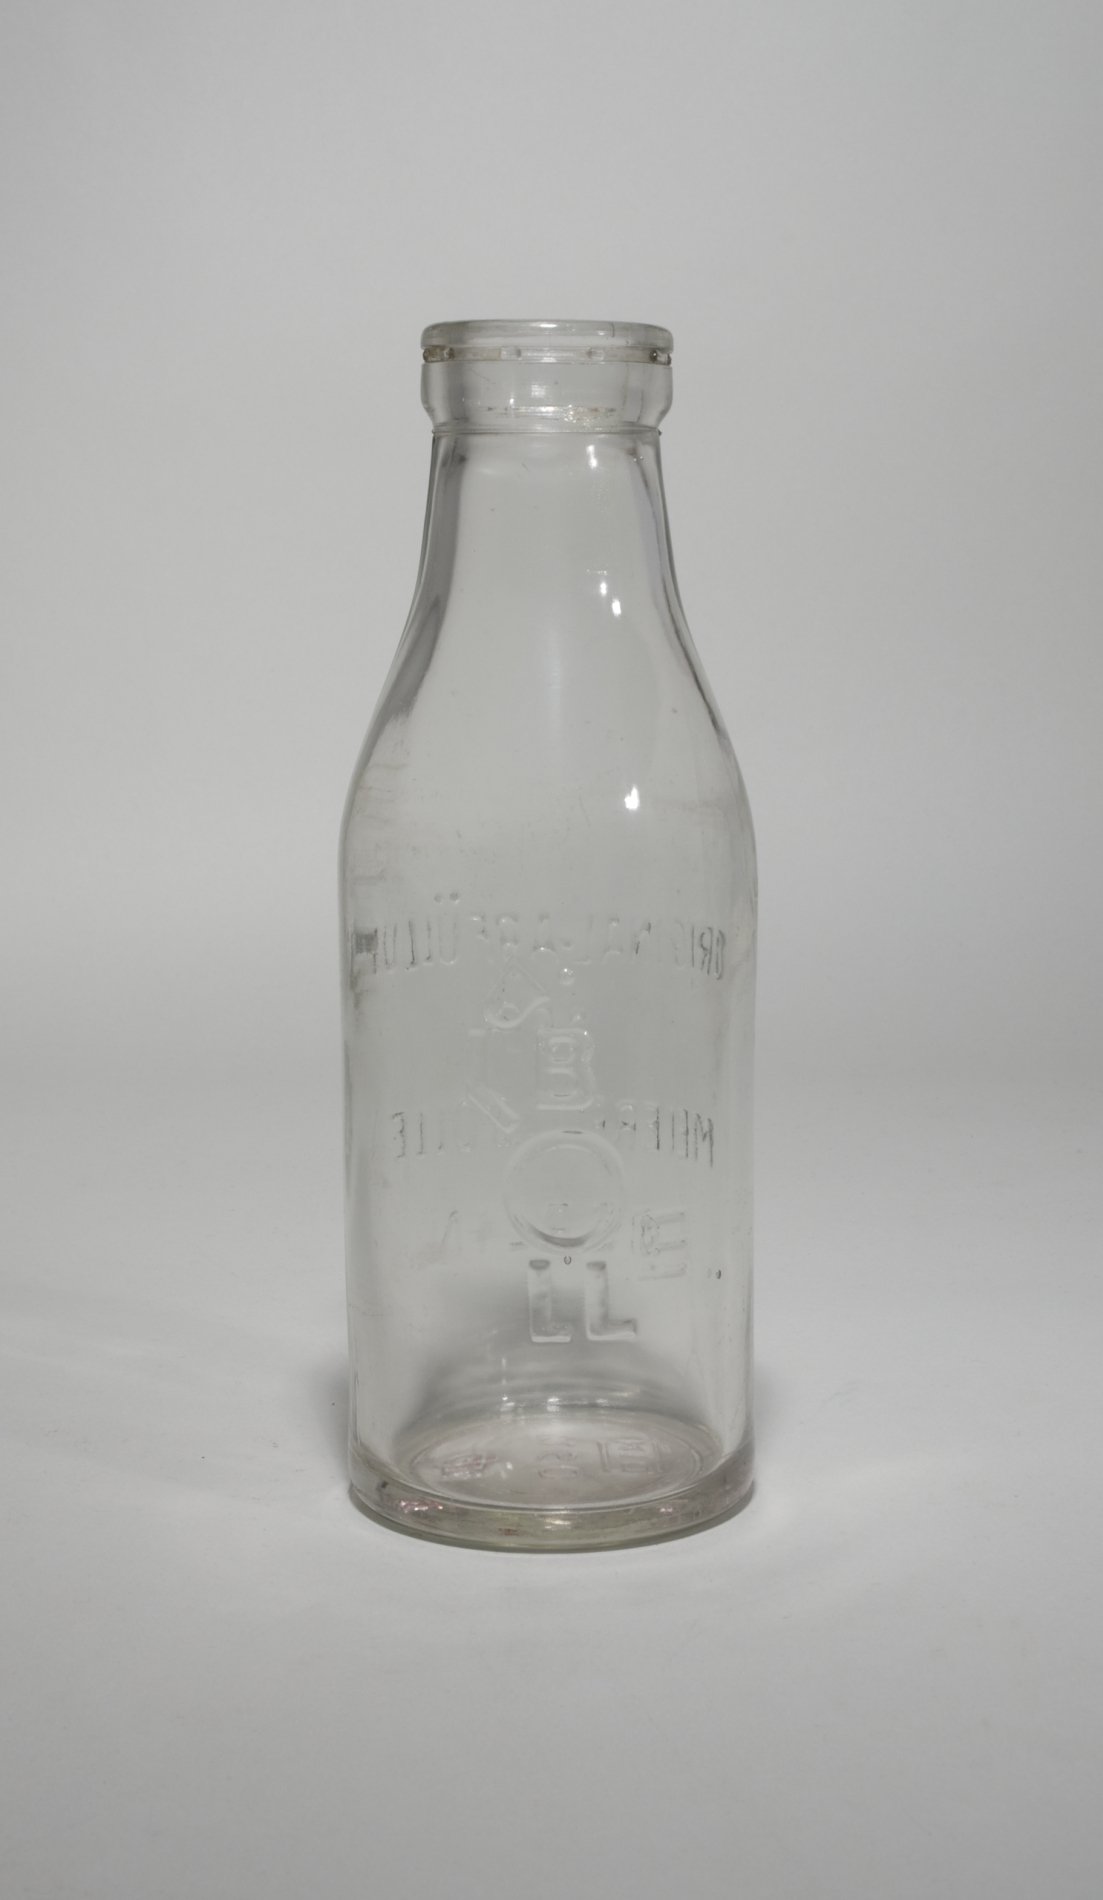 Milchflasche "BOLLE" (Stiftung Domäne Dahlem - Landgut und Museum, Weiternutzung nur mit Genehmigung des Museums CC BY-NC-SA)